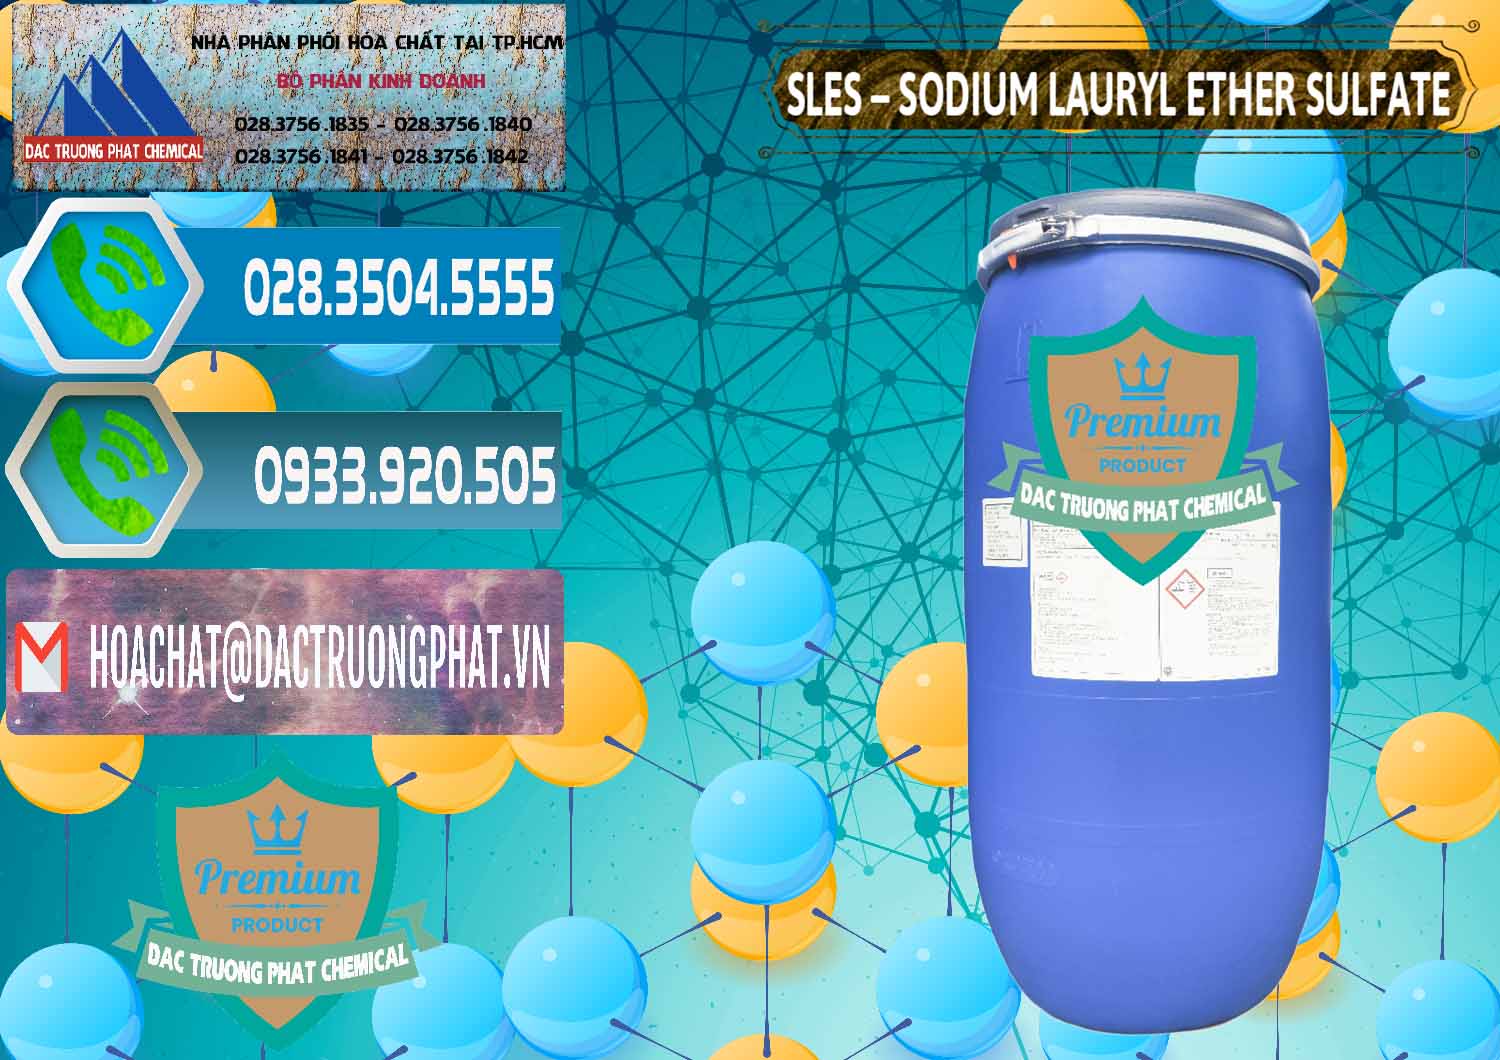 Cty kinh doanh _ bán Chất Tạo Bọt Sles - Sodium Lauryl Ether Sulphate Kao Indonesia - 0046 - Công ty chuyên kinh doanh và phân phối hóa chất tại TP.HCM - congtyhoachat.net